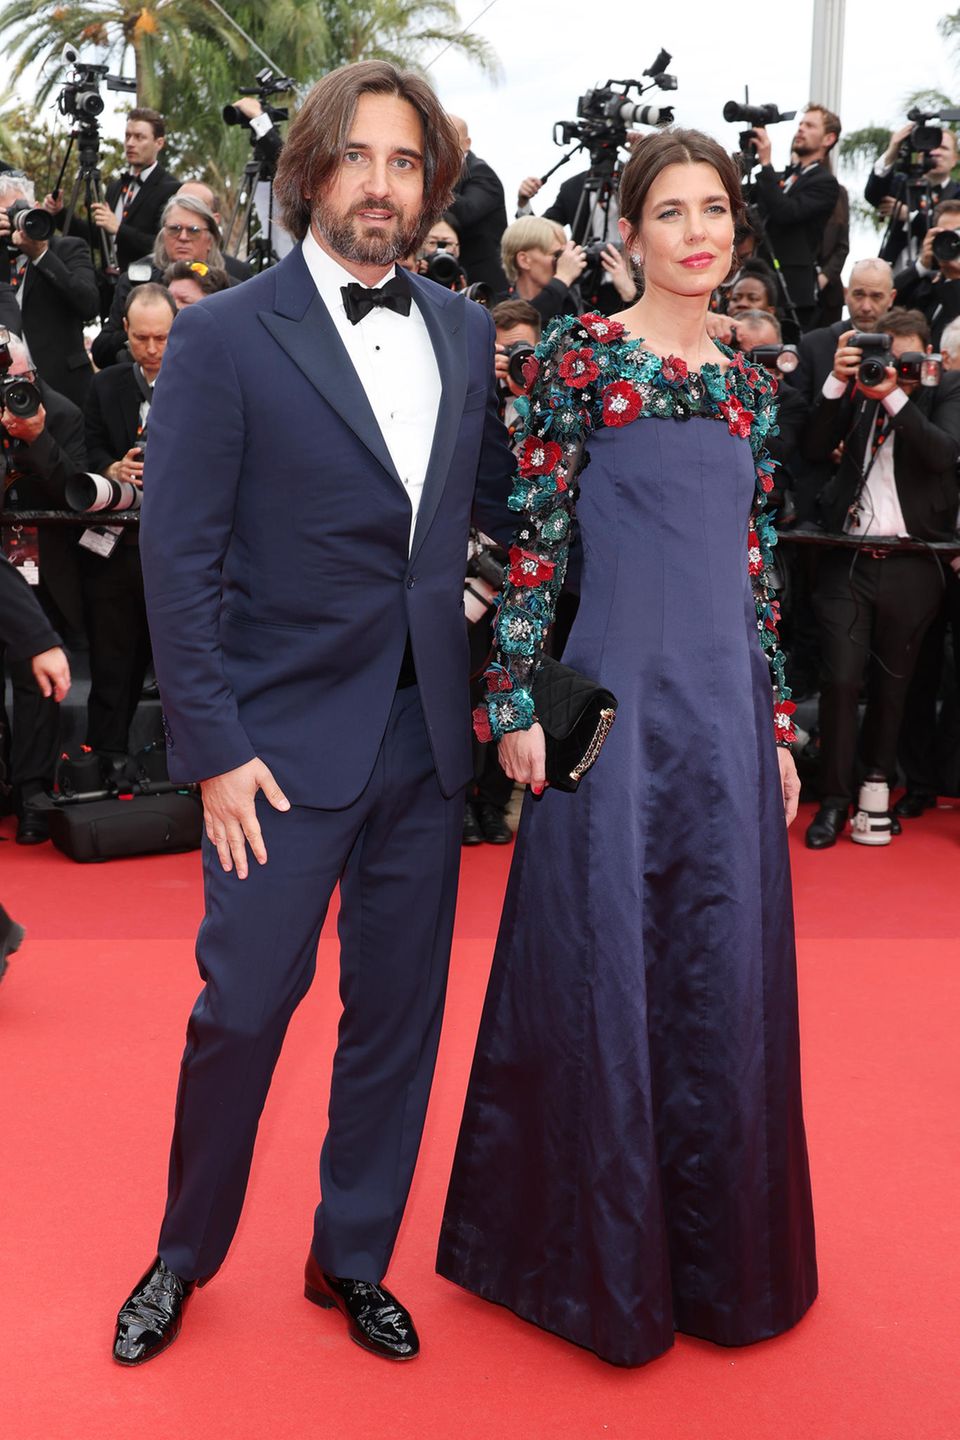 Charlotte Casiraghi zeigt sich gemeinsam mit Ehemann Dimitri Rassam auf dem roten Teppich der Filmfestspiele in Cannes. Während Charlotte auf ein mitternachtsblaues Kleid mit 3D-Blütenapplikation setzt, verzichtet Dimitrit zwar auf Blüten und Blumen, zeigt sich aber ebenfalls in dem dunklen Blauton.